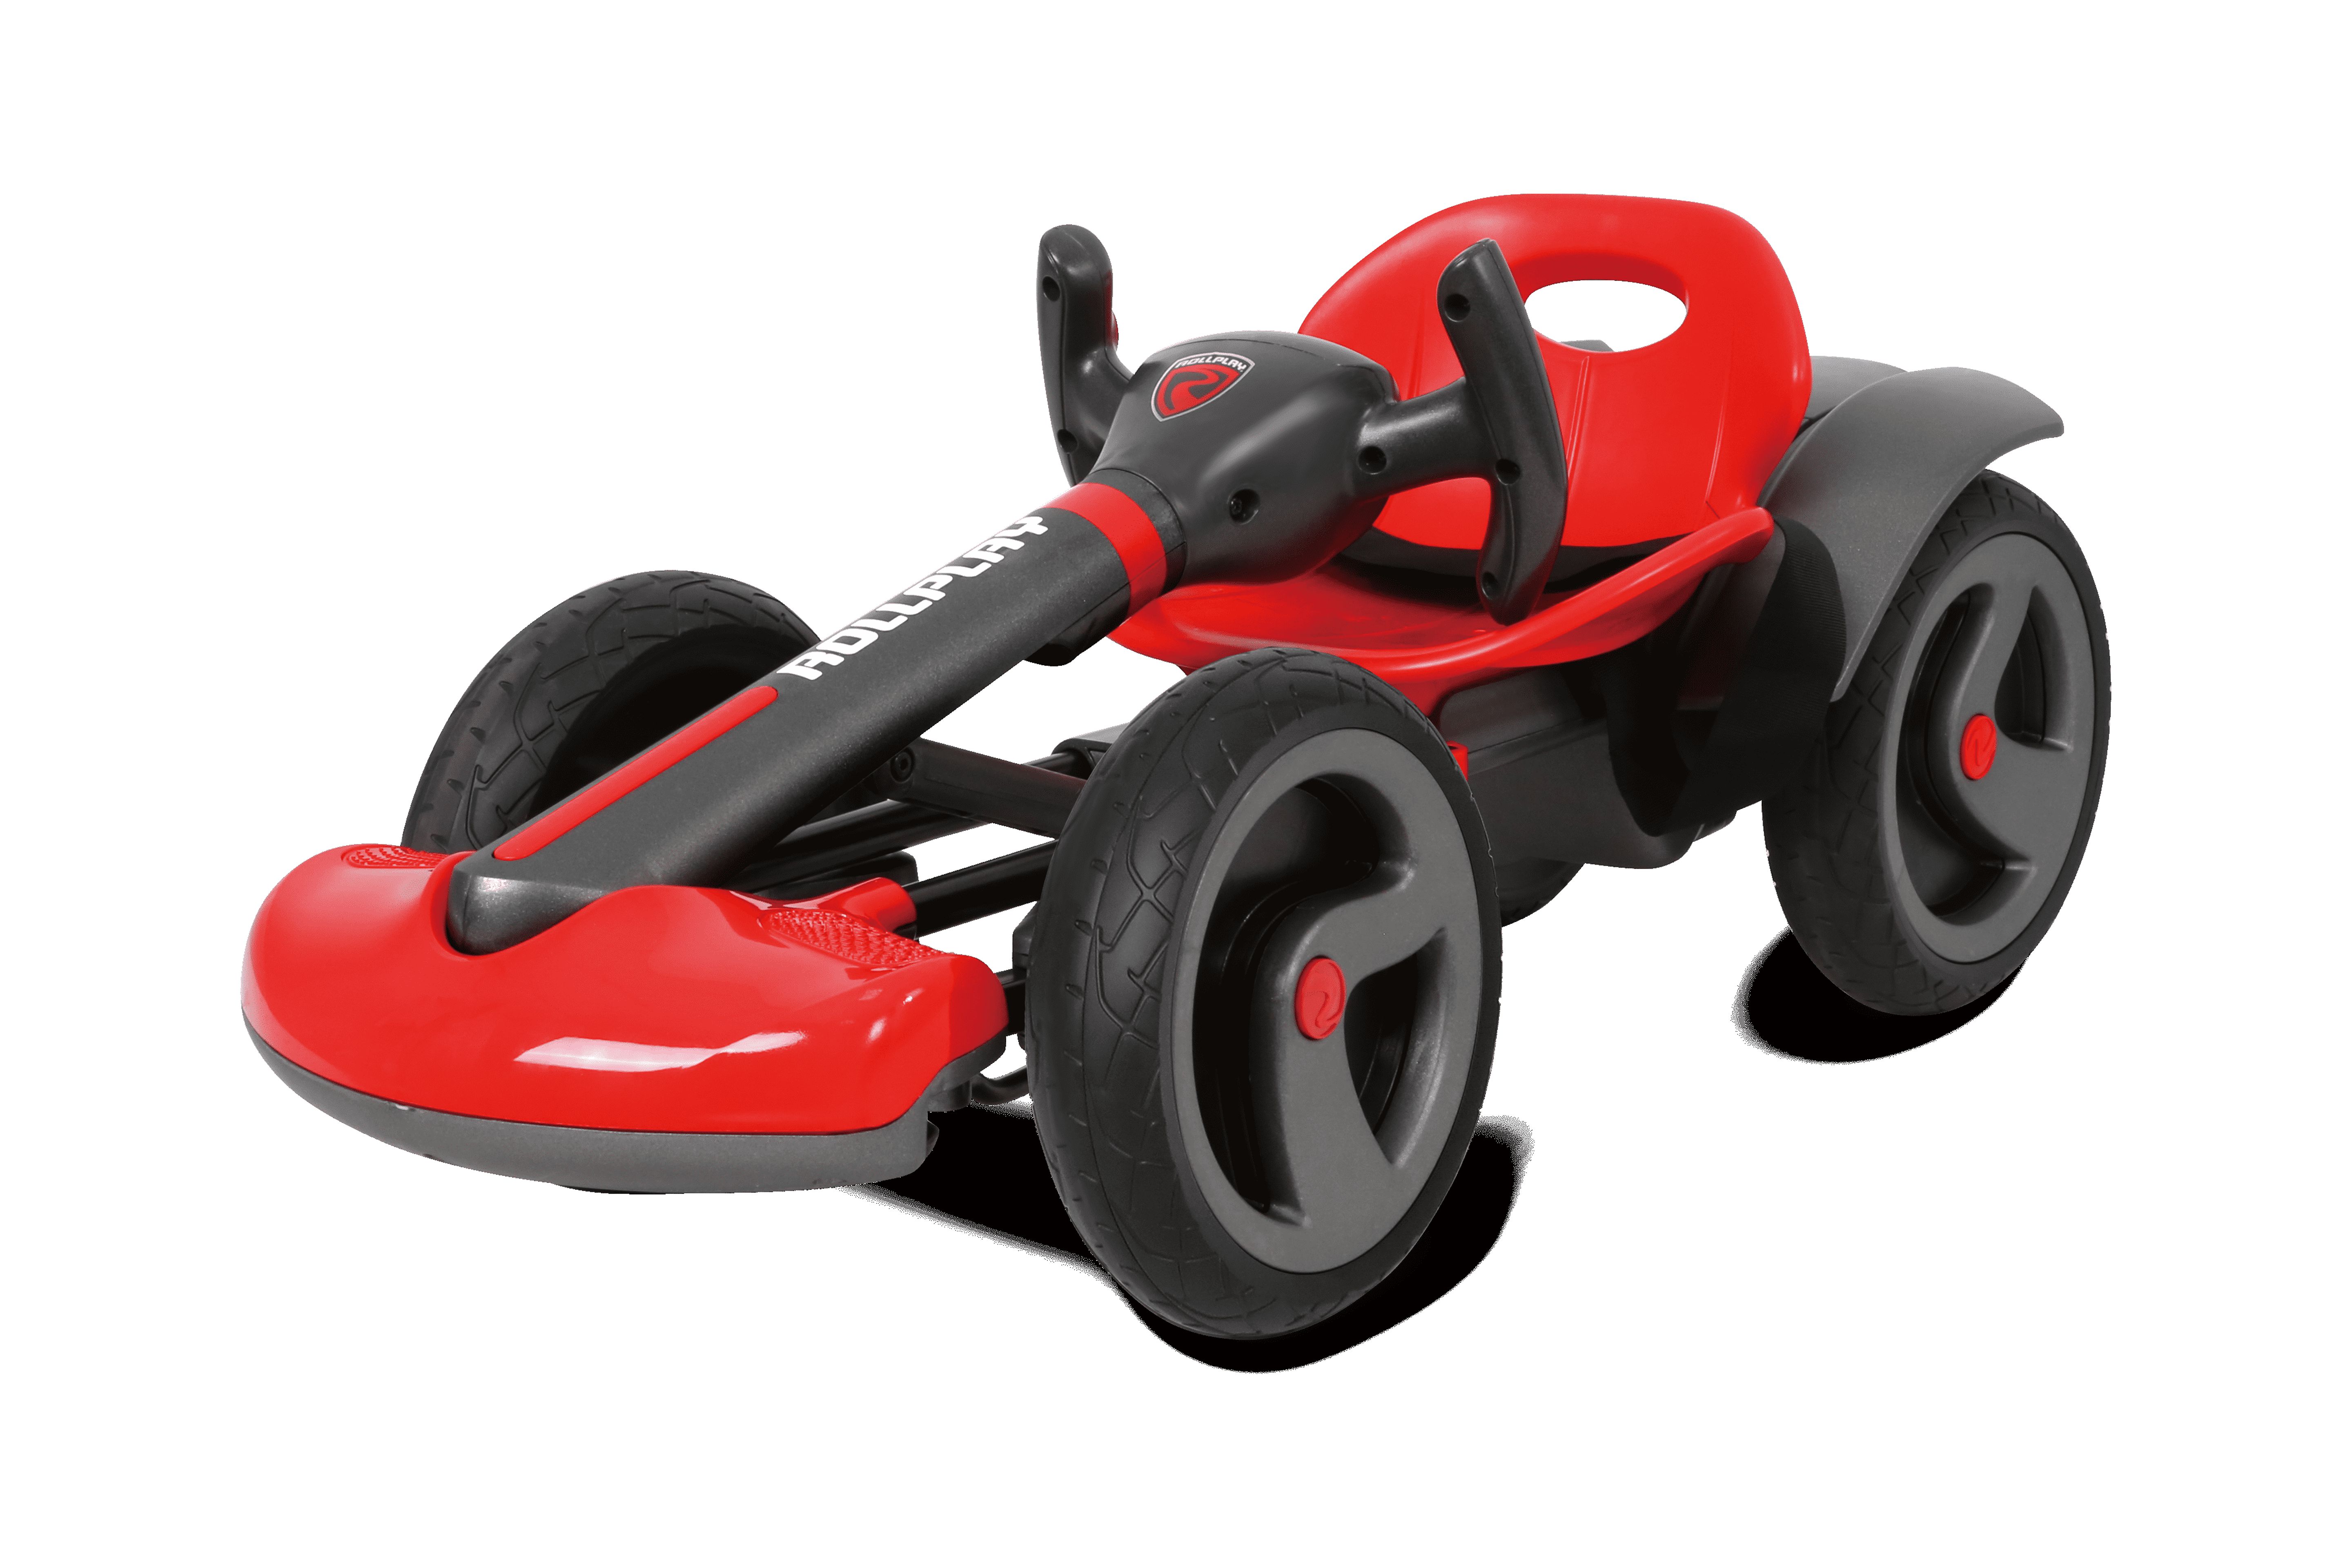 FLEX Kart 6-Volt Battery Ride-On Vehicle (Red) - image 3 of 8